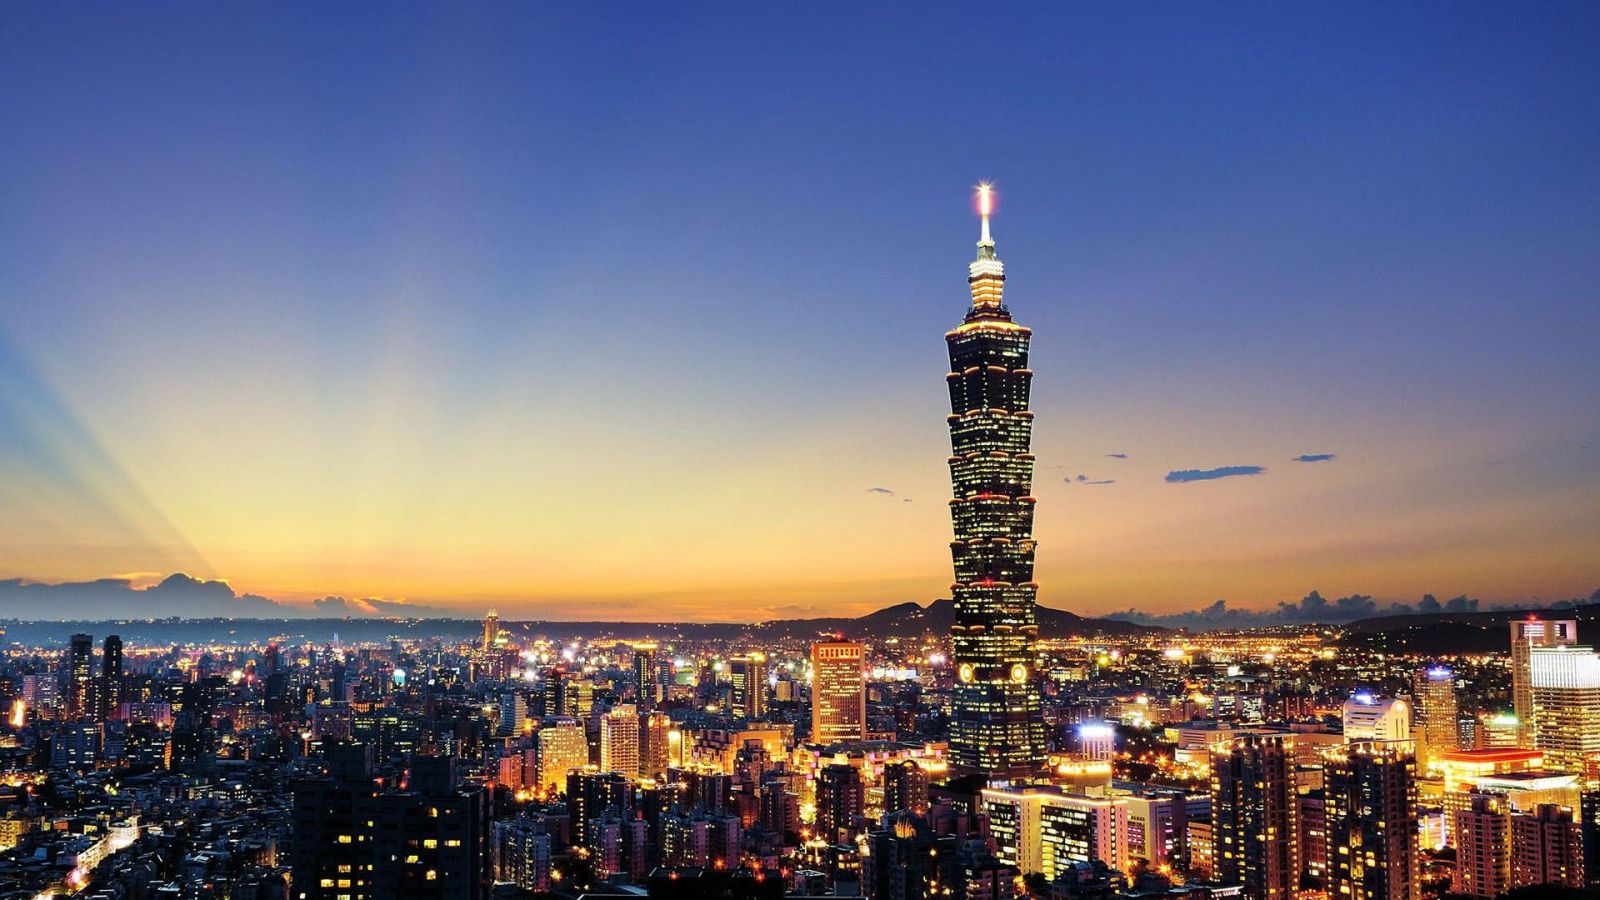 國內經濟大退步 IMD世界競爭力台灣排第14